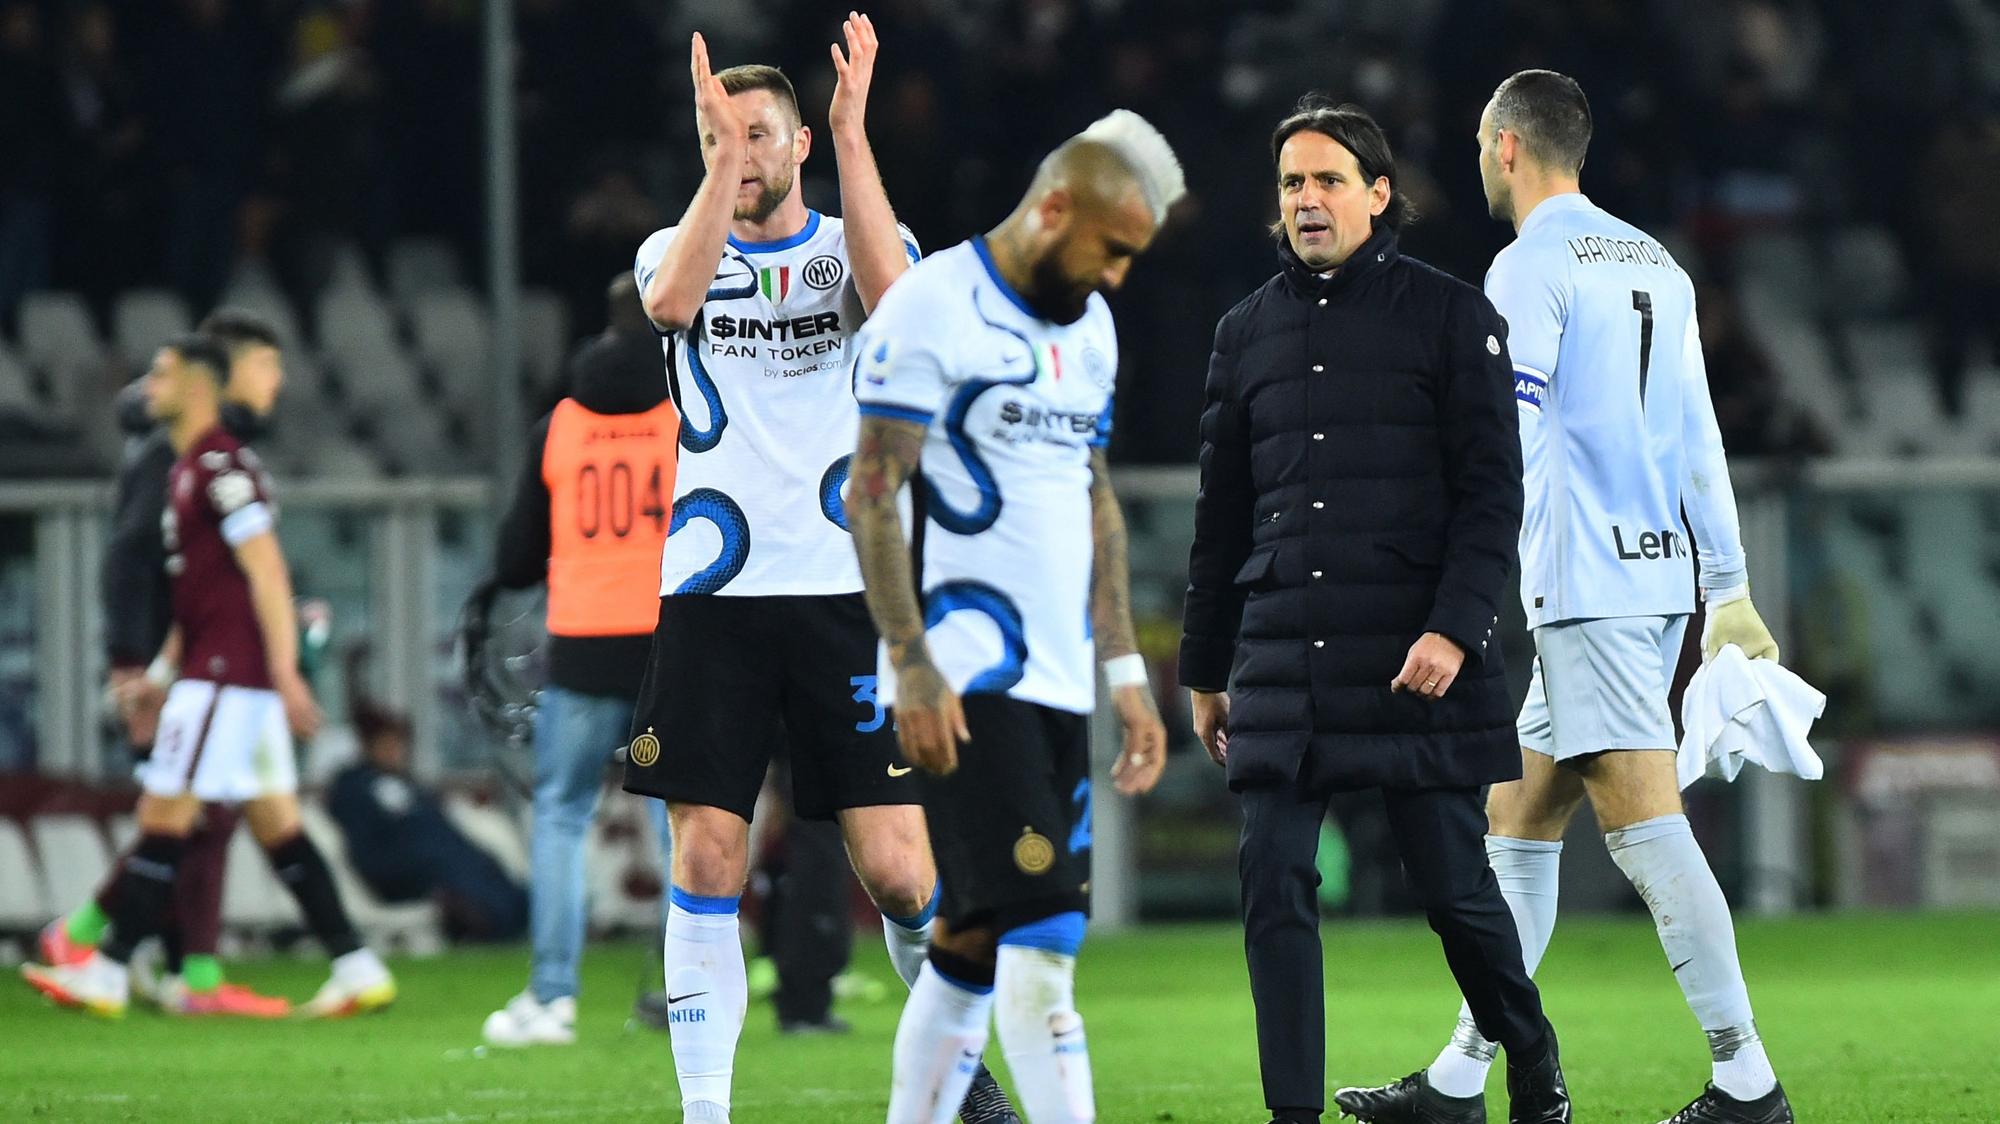 Interu sa vzdaľuje titul, víťazstvo AC Miláno zatienili rasistické urážky